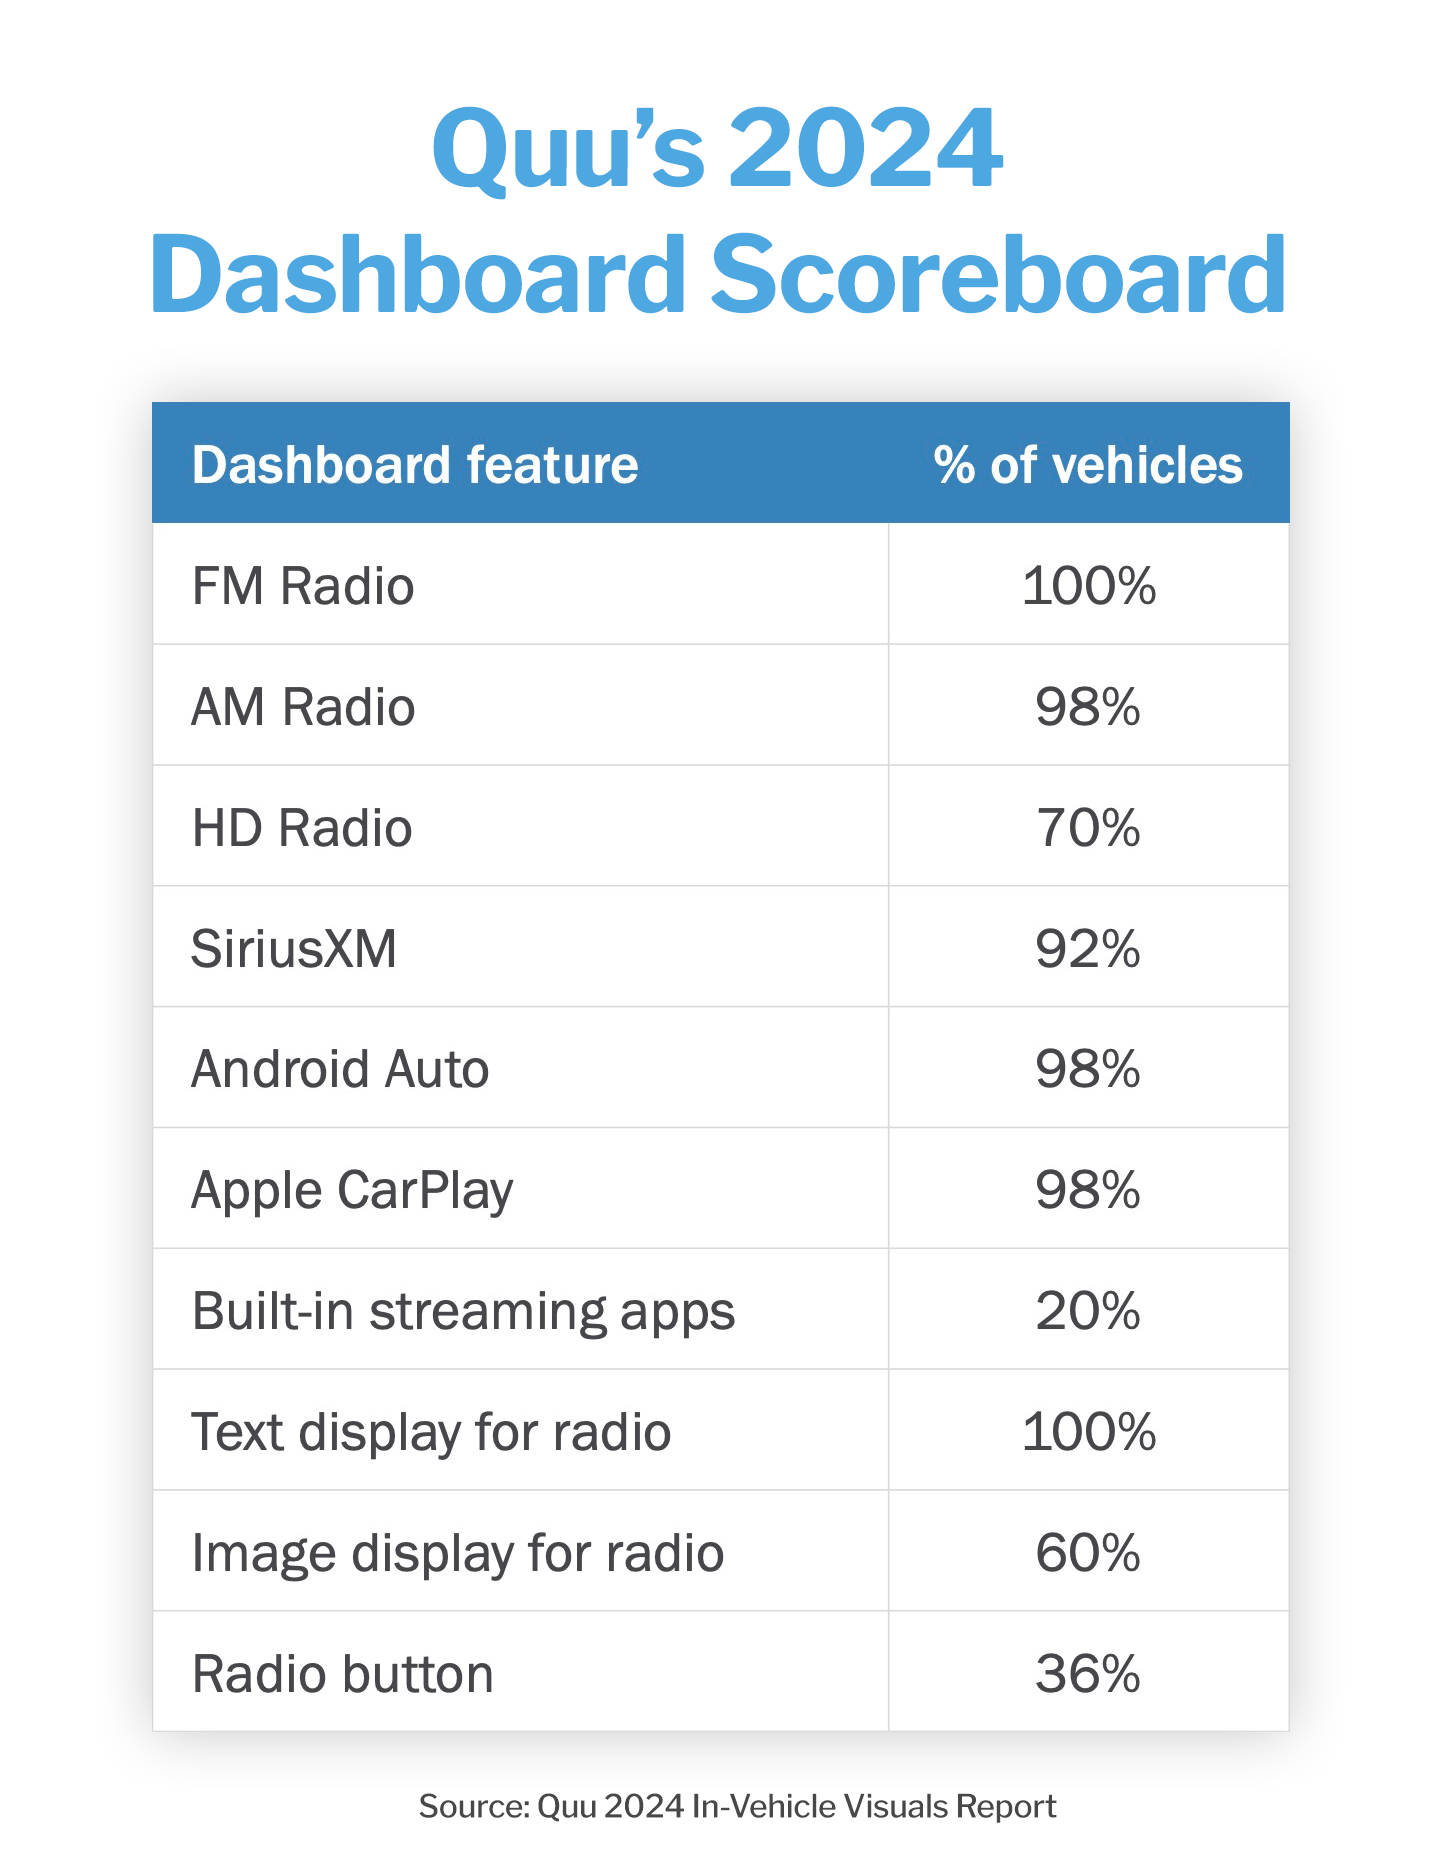 Quu's 2024 In-Vehicle Visuals Report - Dashboard Scorecard